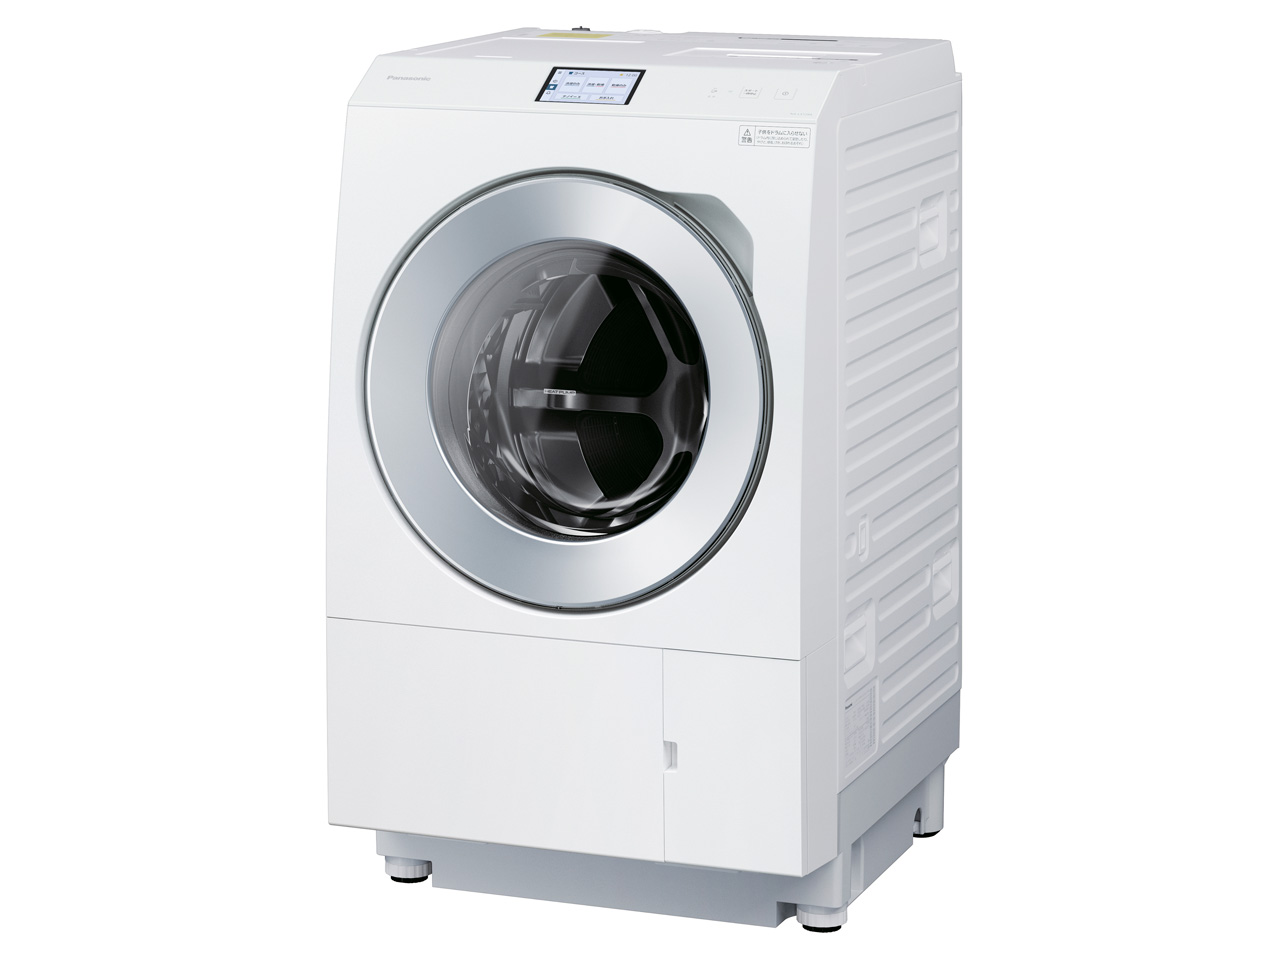 フルモデルチェンジ！！Panasonic 最新ドラム式洗濯乾燥機詳しくご紹介します | 家電のプロ.com